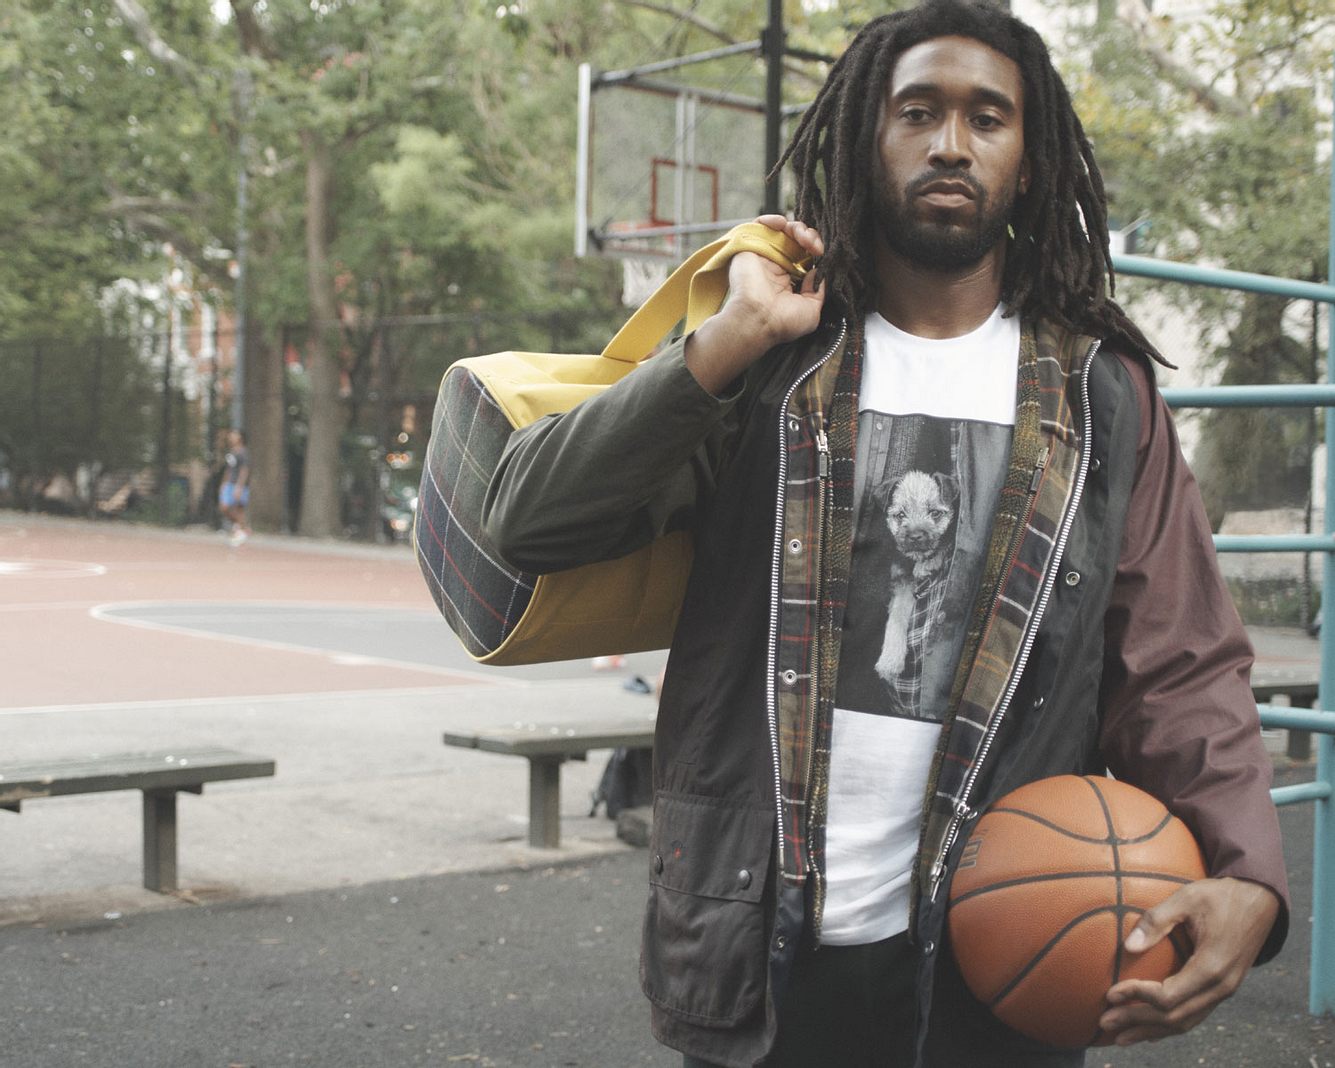 Mann mit Basketball und Sporttasche